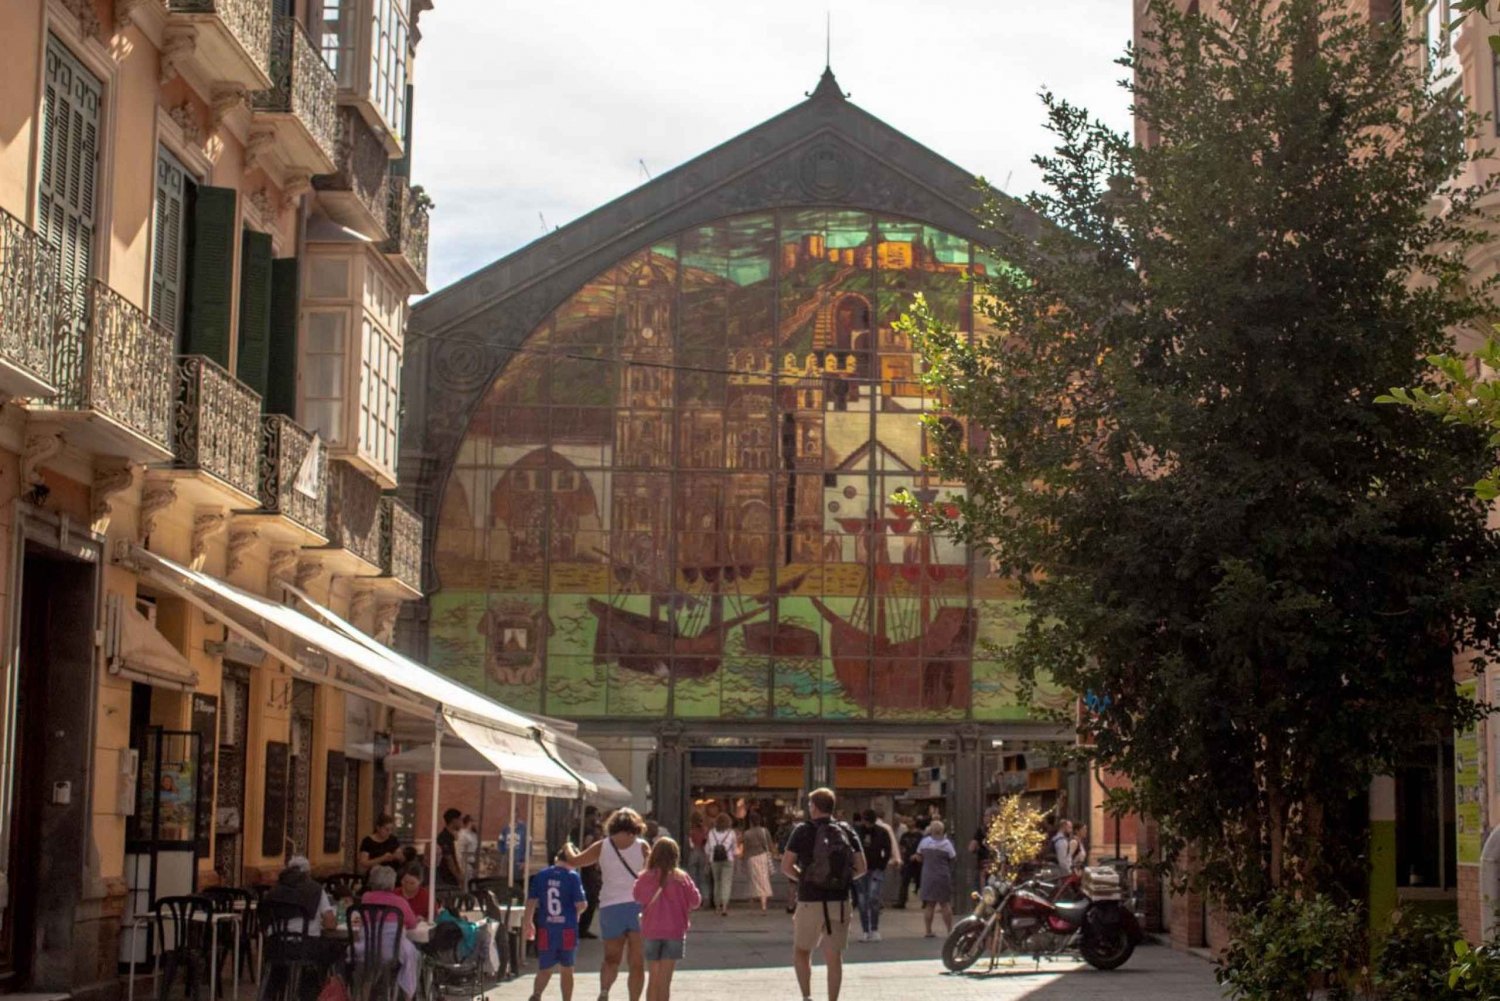 Tour por el centro histórico de Málaga alrededor del Mercado